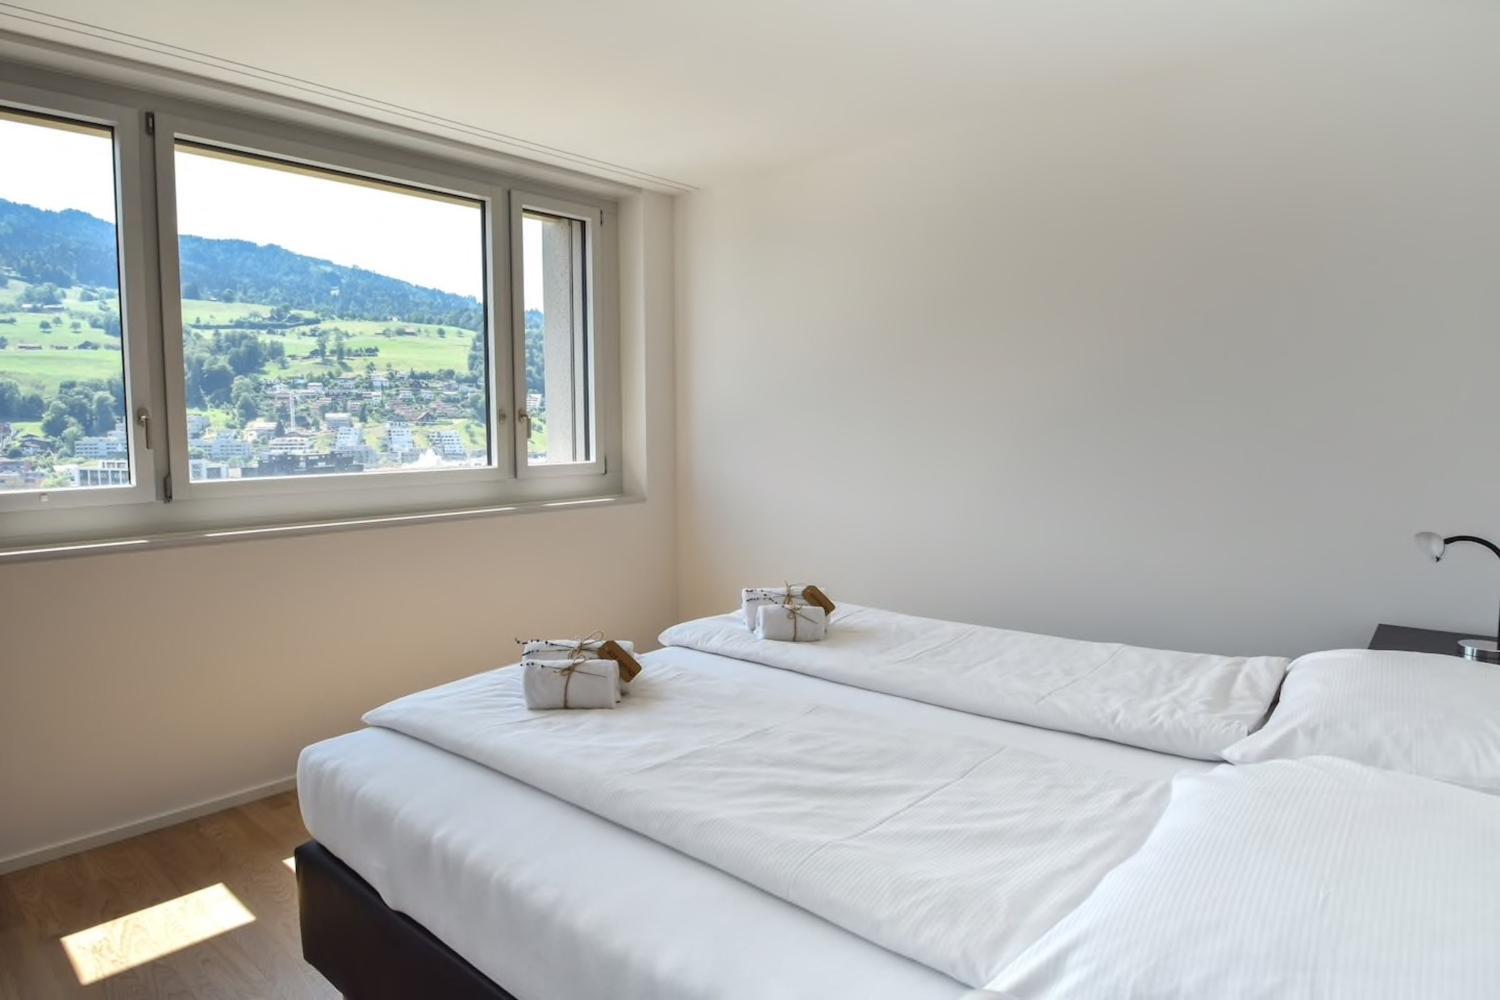 Dream View Apt With Homecinema Netflix & Loggia, Luzern